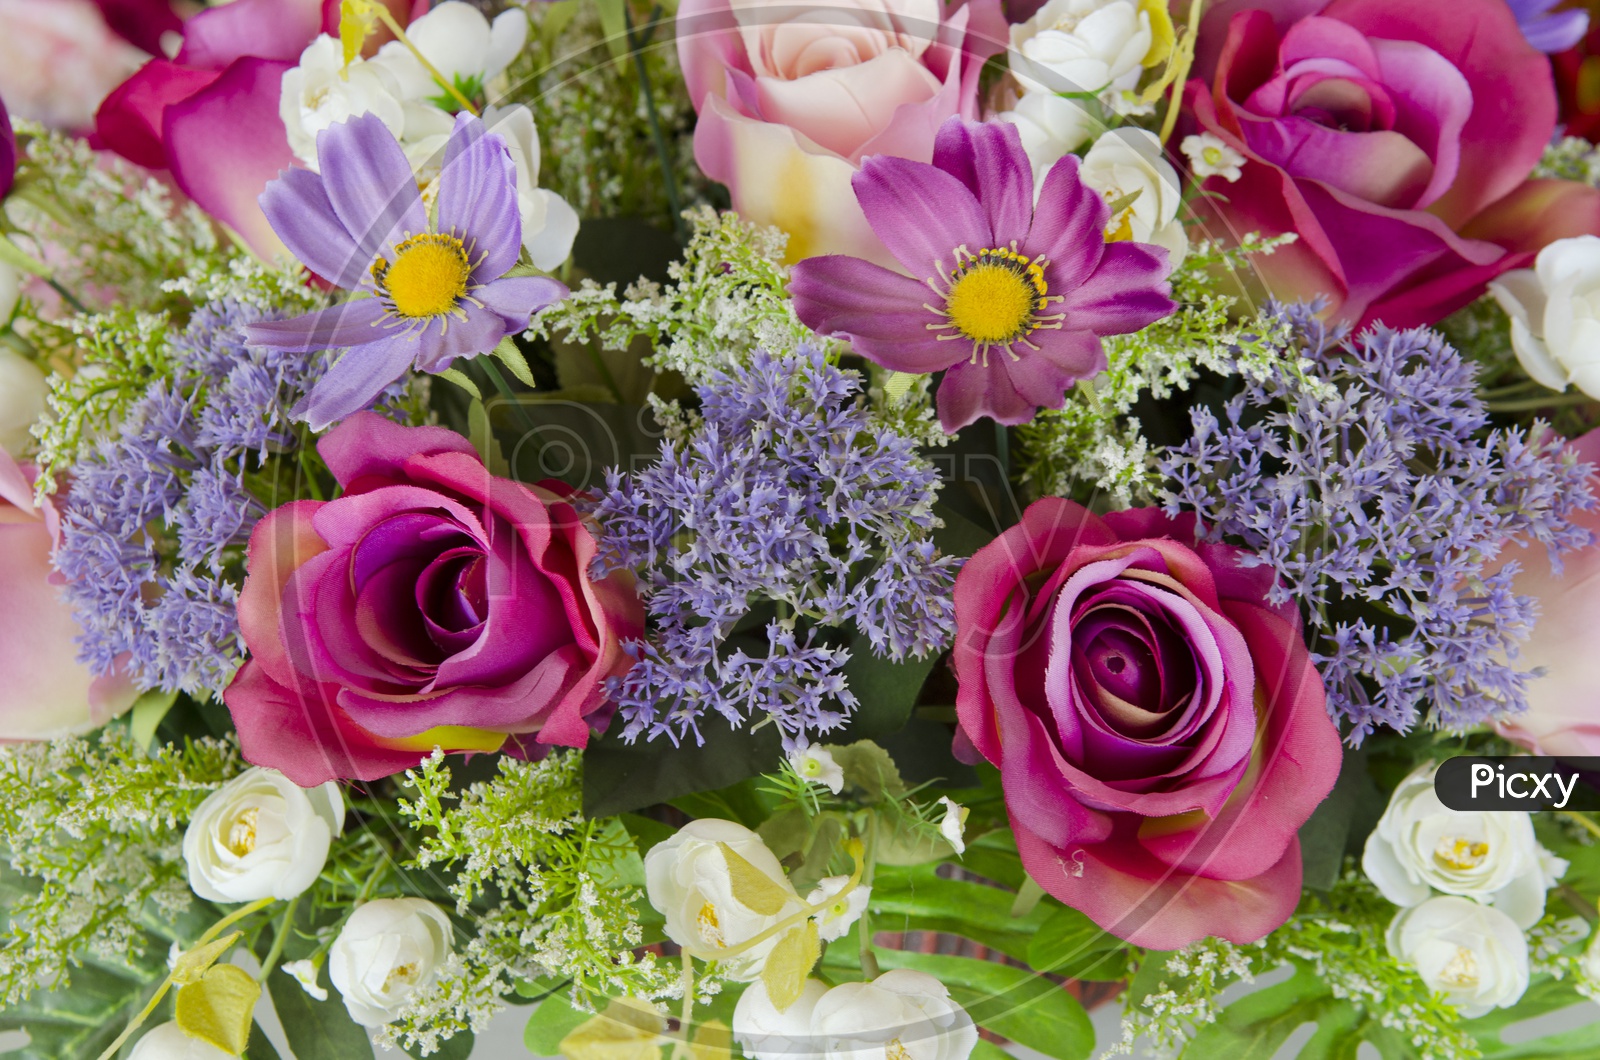 Clourful Flowers in a Bouquet Closeup